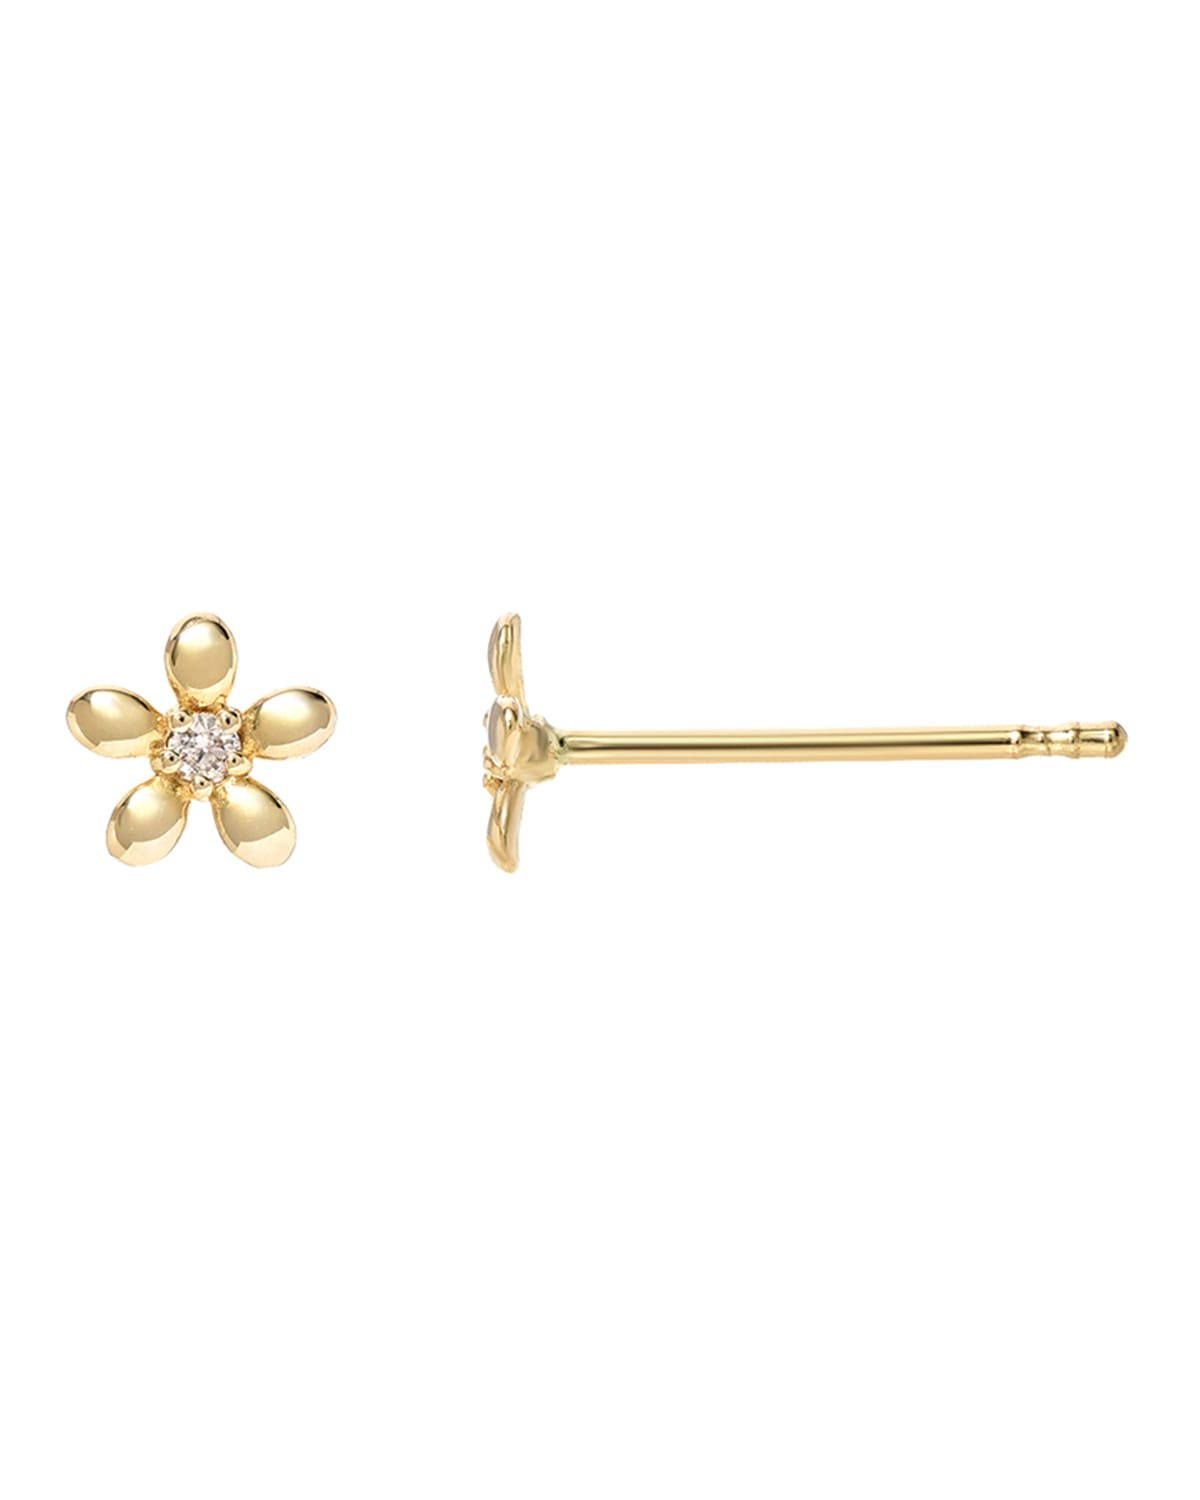 Zoe Lev Jewelry 14k Gold Tiny Diamond Flower Earrings